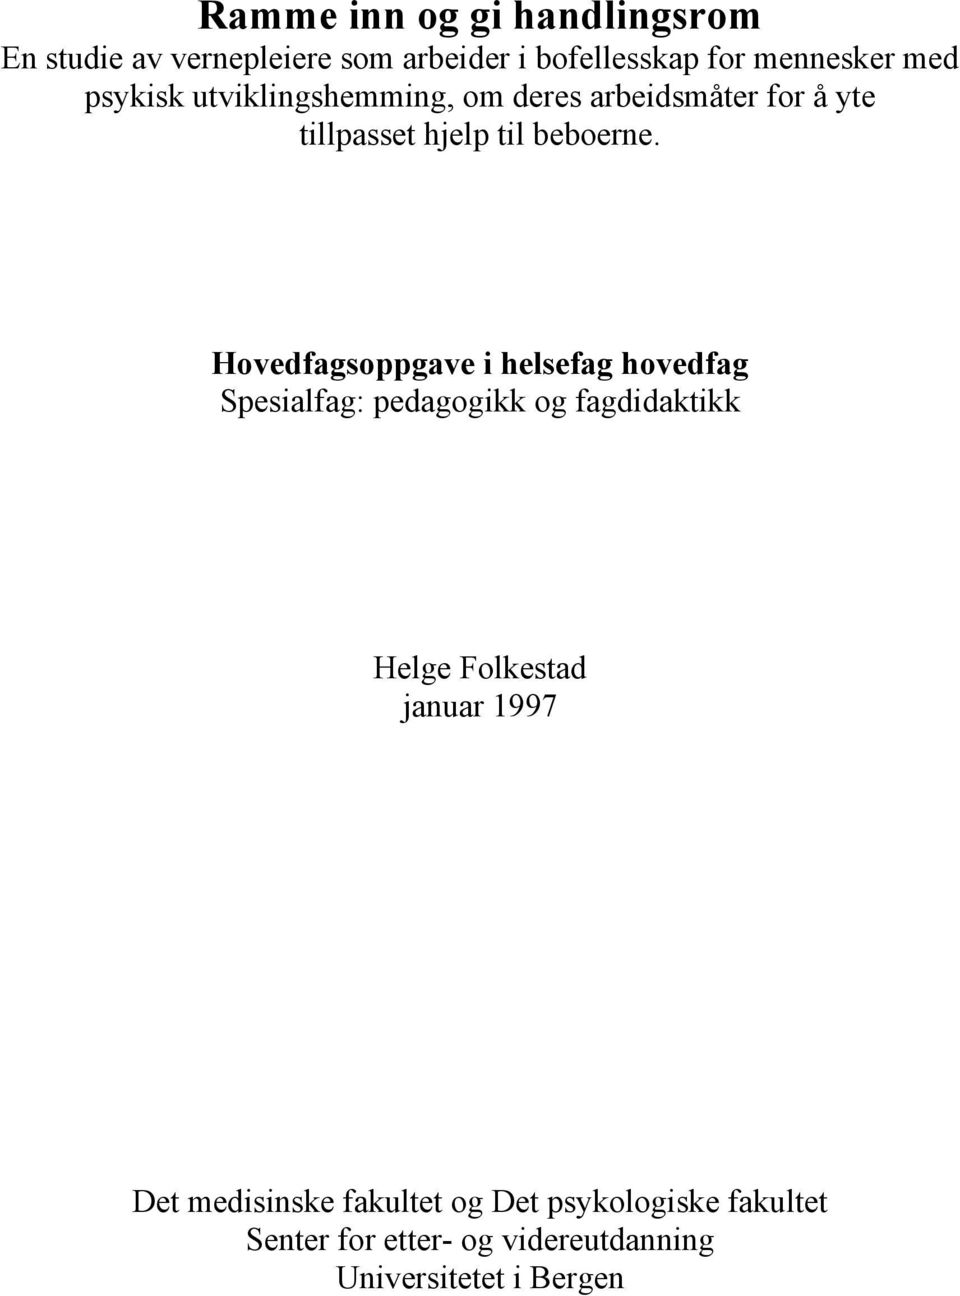 Hovedfagsoppgave i helsefag hovedfag Spesialfag: pedagogikk og fagdidaktikk Helge Folkestad